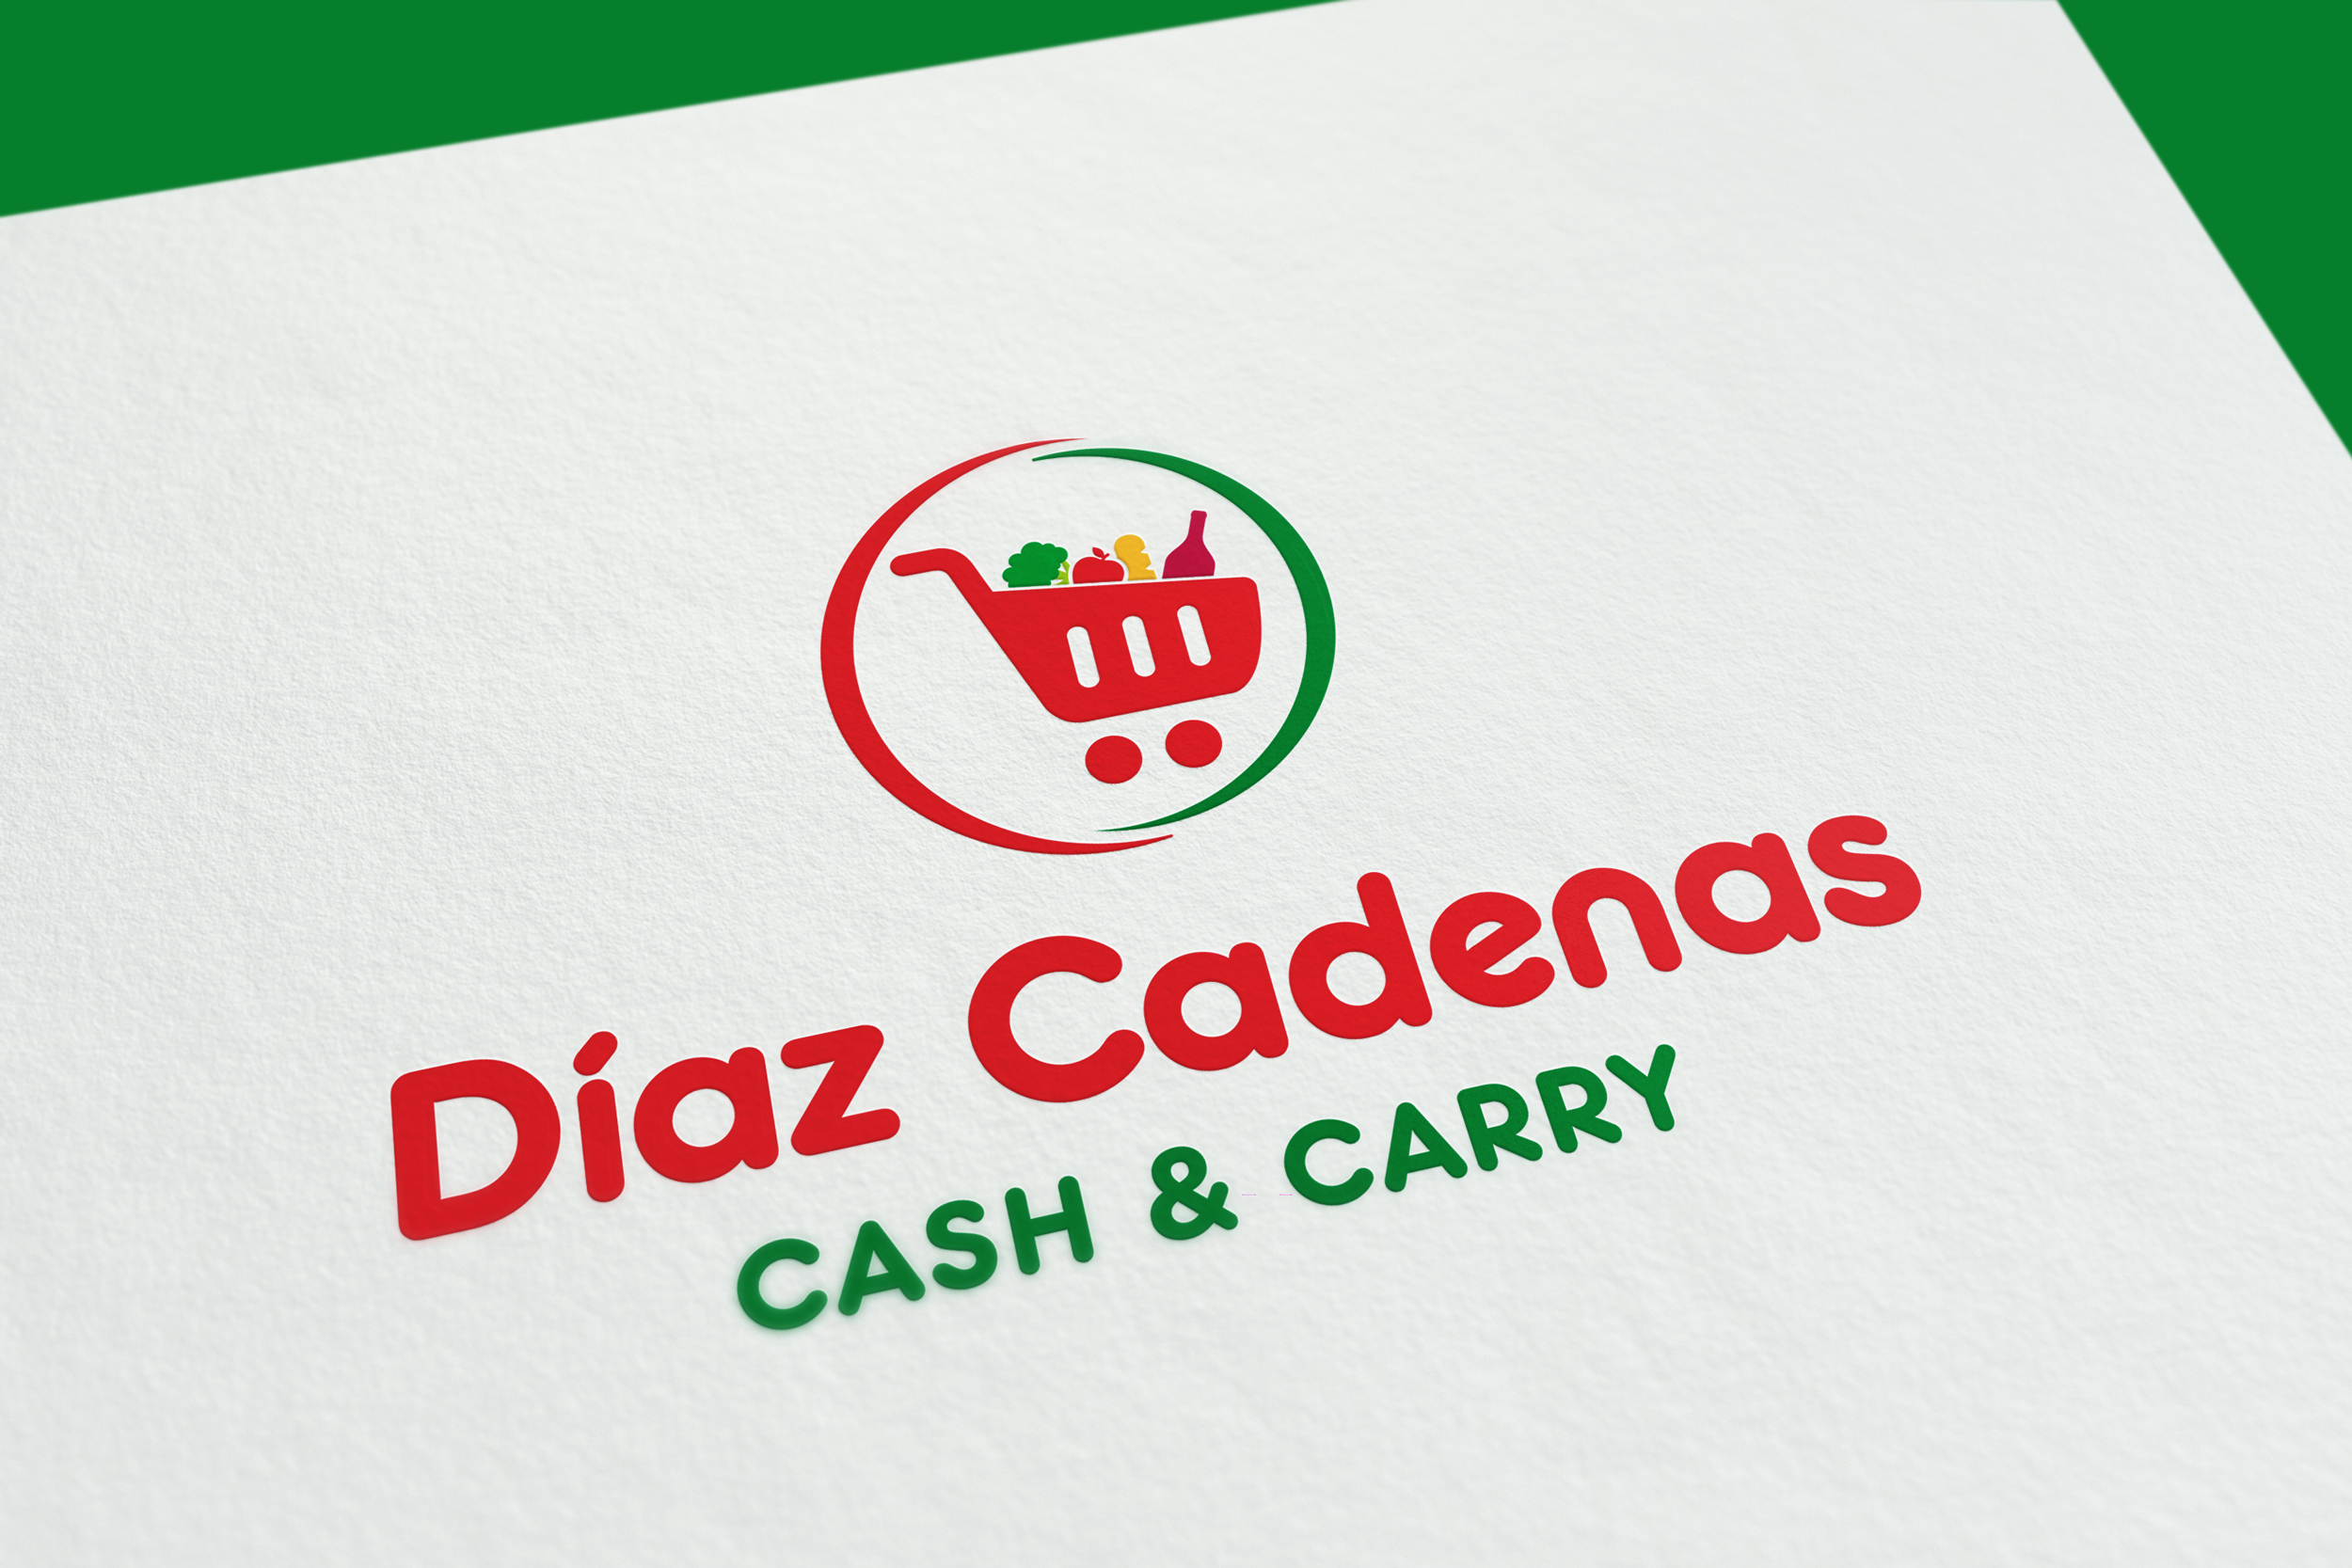 Cash Díaz Cadenas